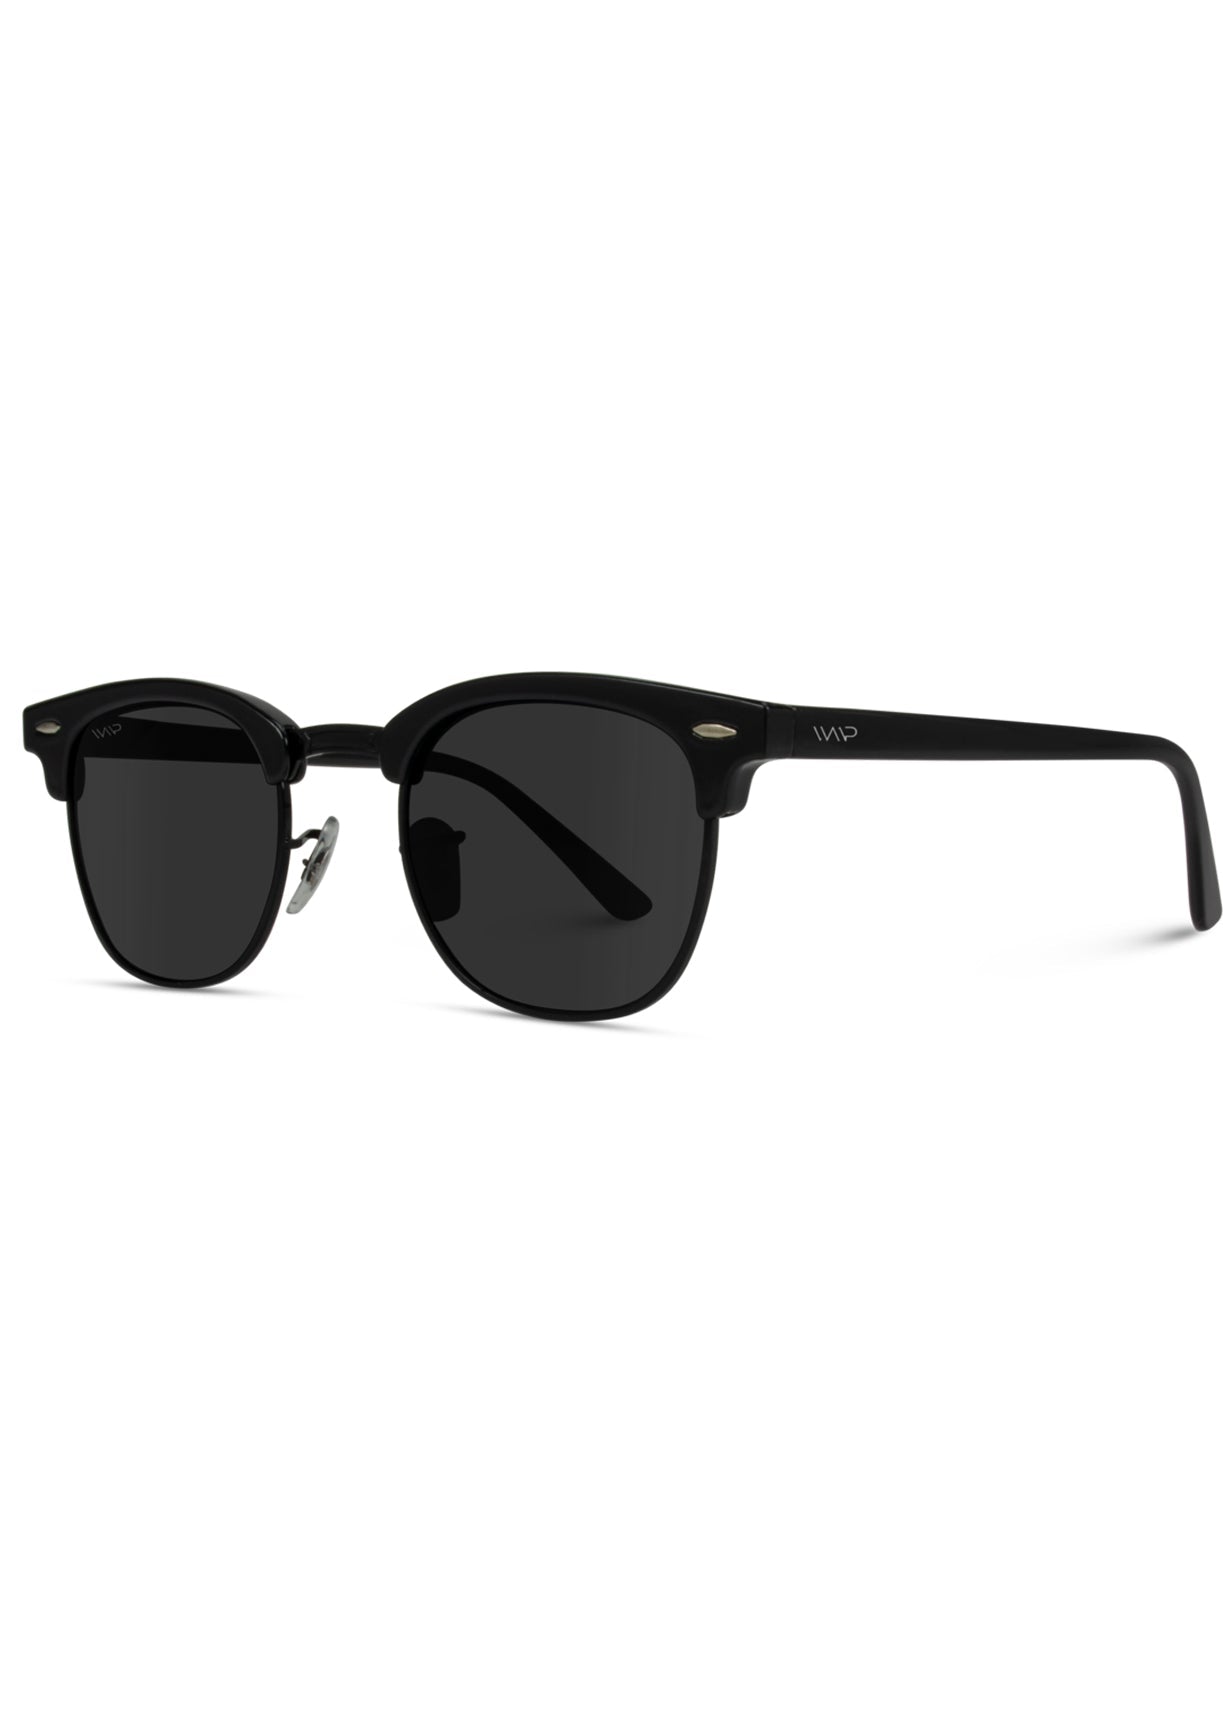 Black Semi-Rimless Polarized Sunglasses - FINAL SALE Accessories